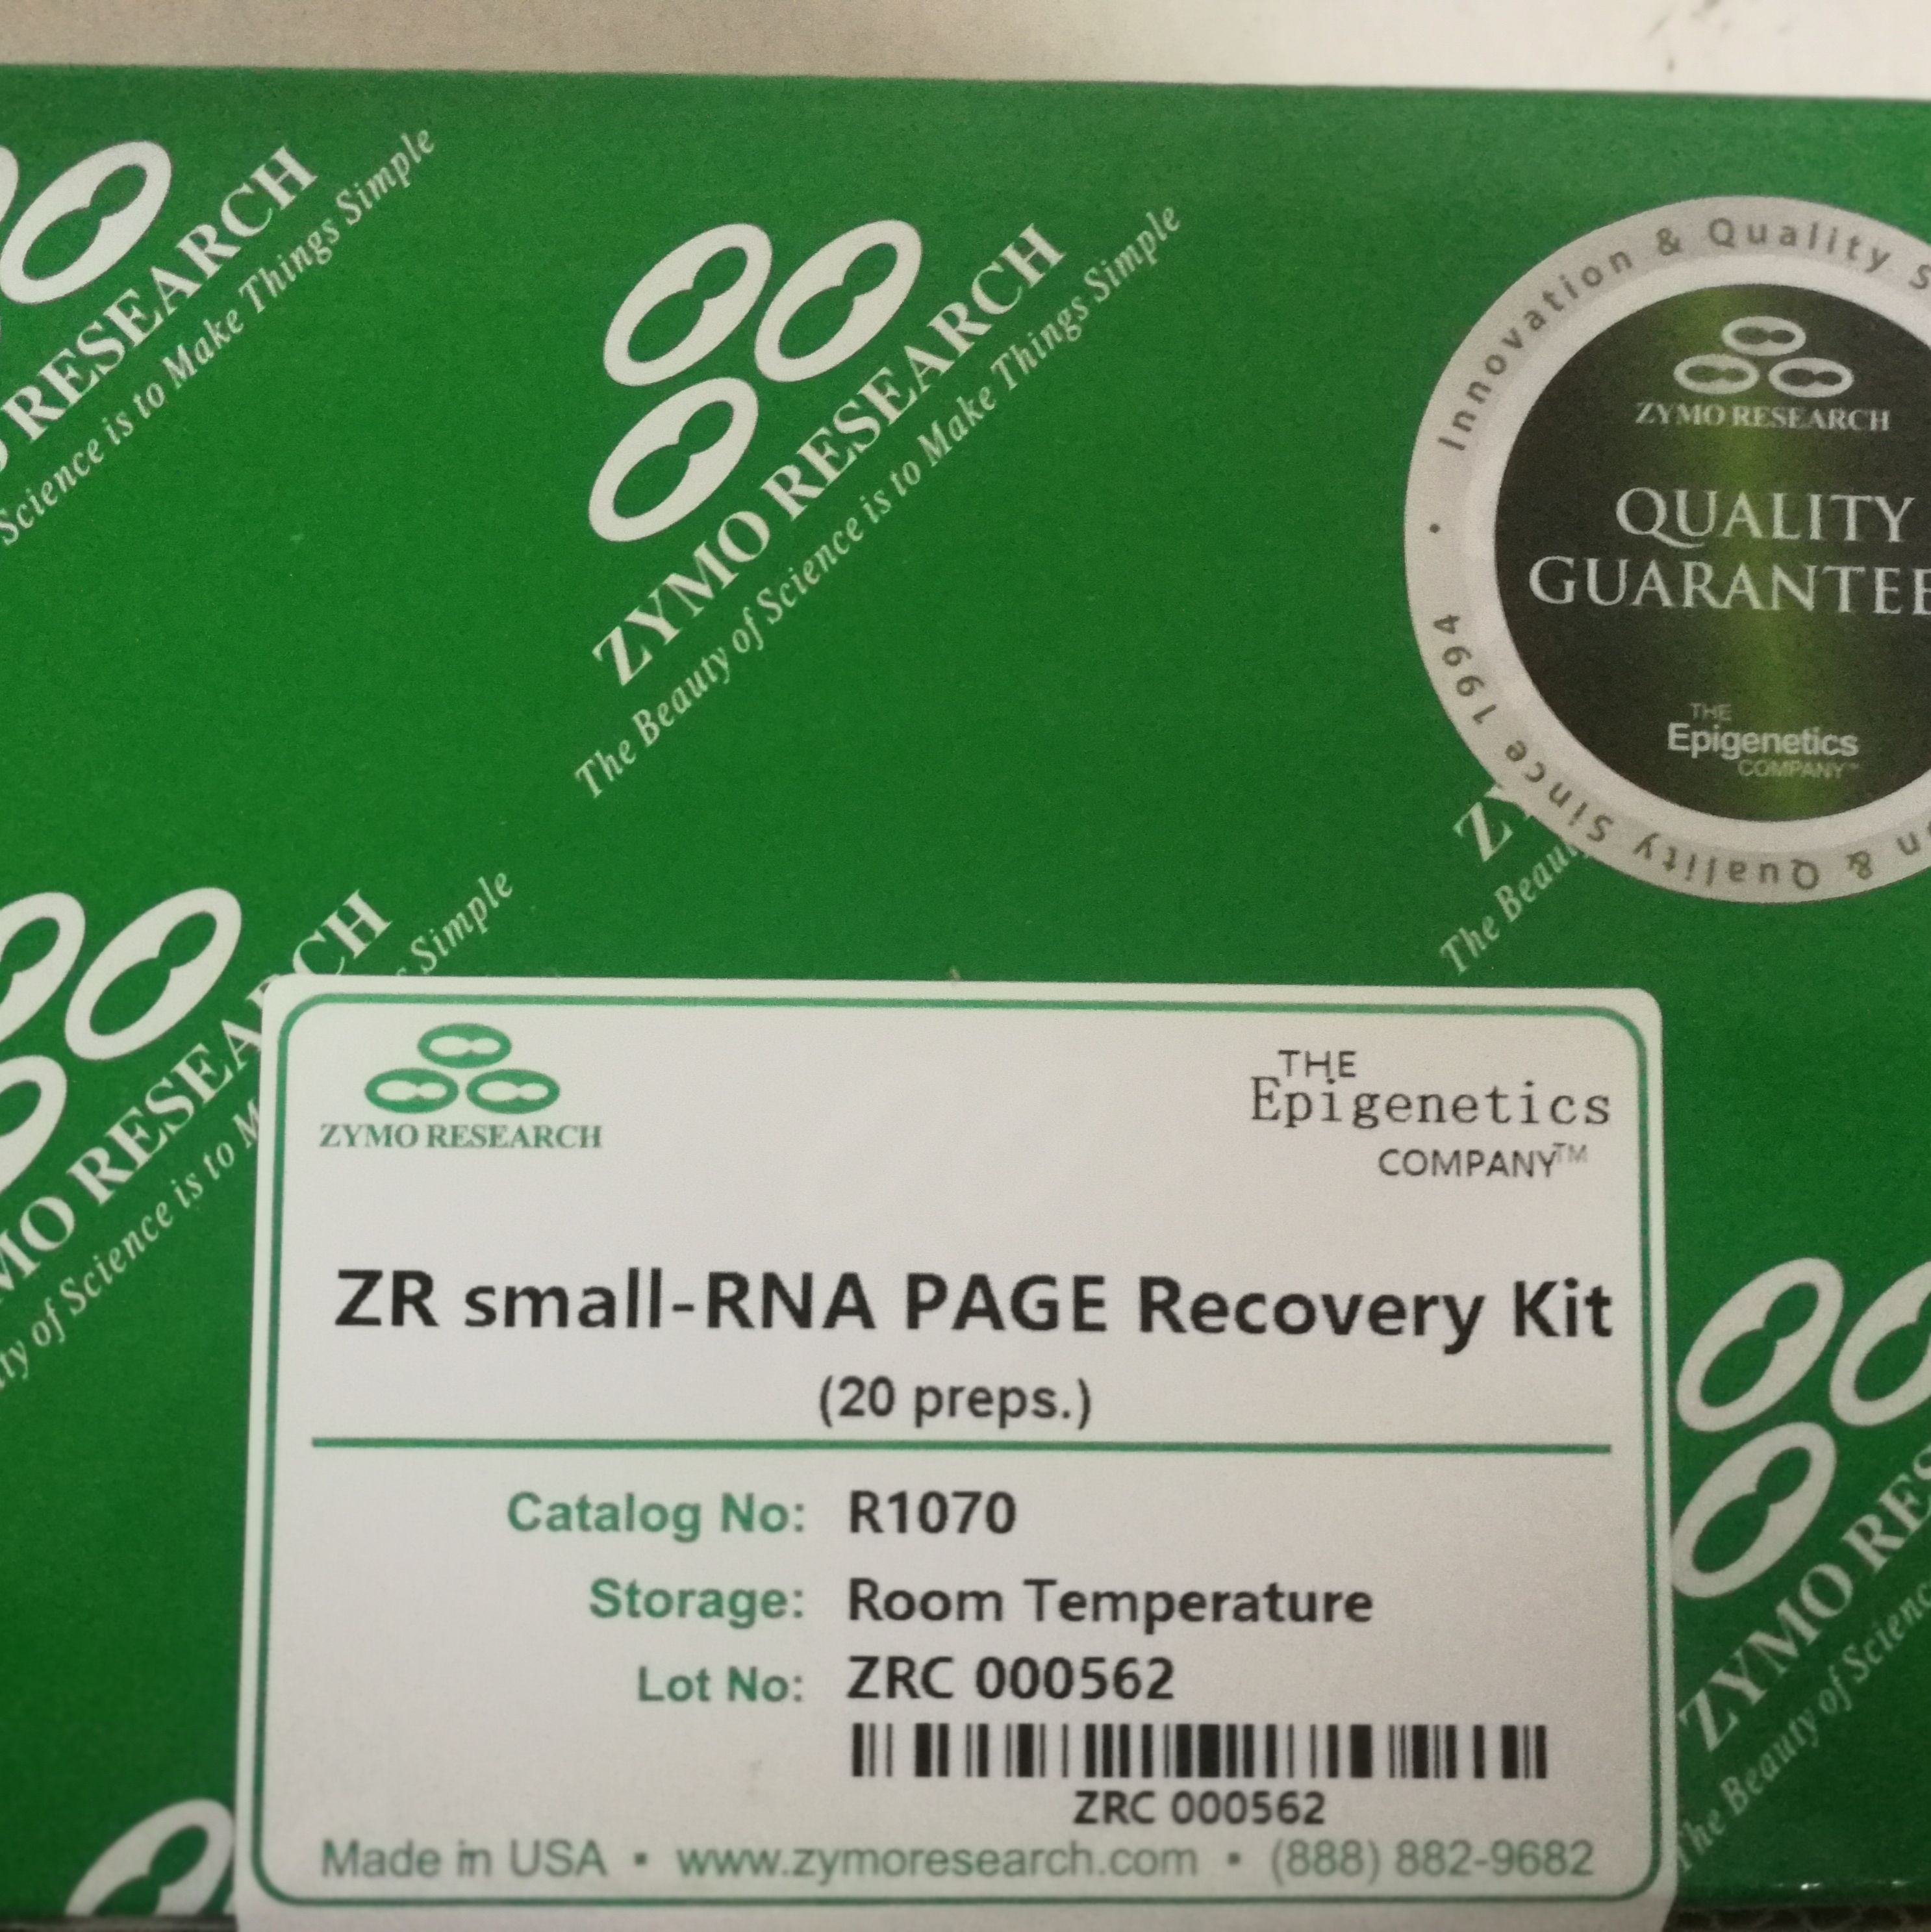 Zymo Research货号R1070凝胶RNA回收试剂盒13611631389上海睿安生物